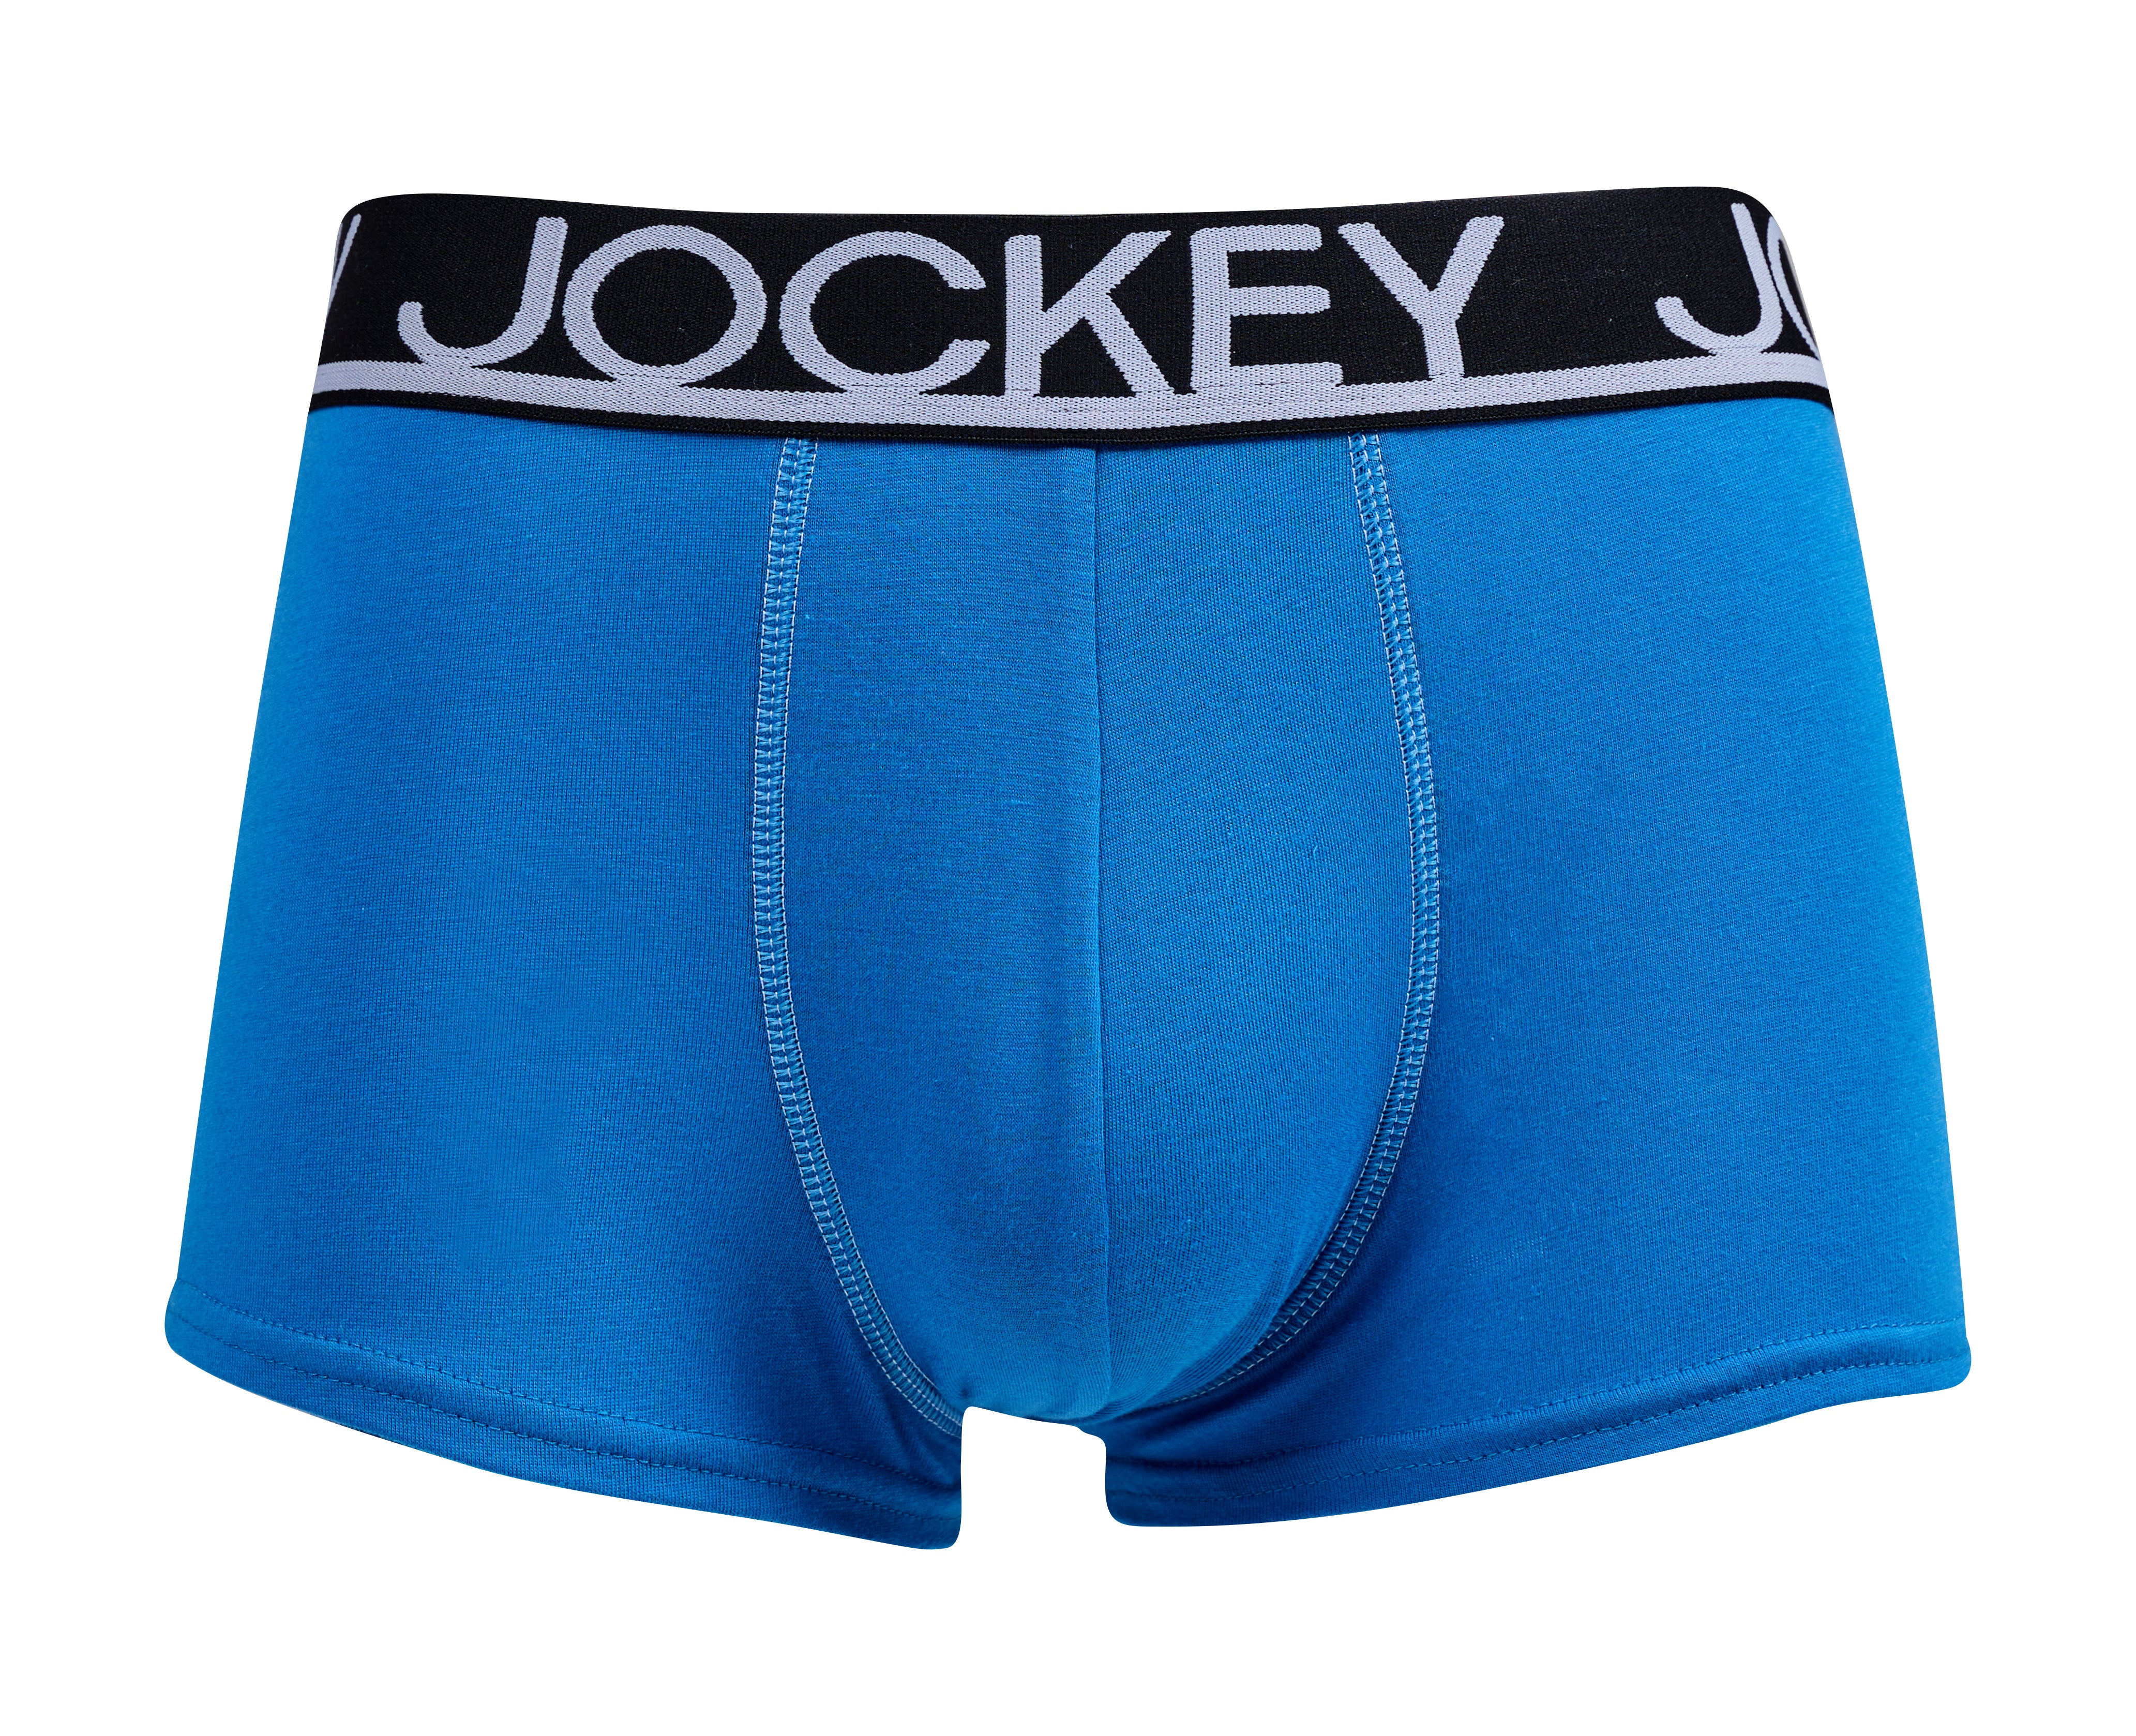 Mens Boxer Shorts - 1202 - AS Colour US